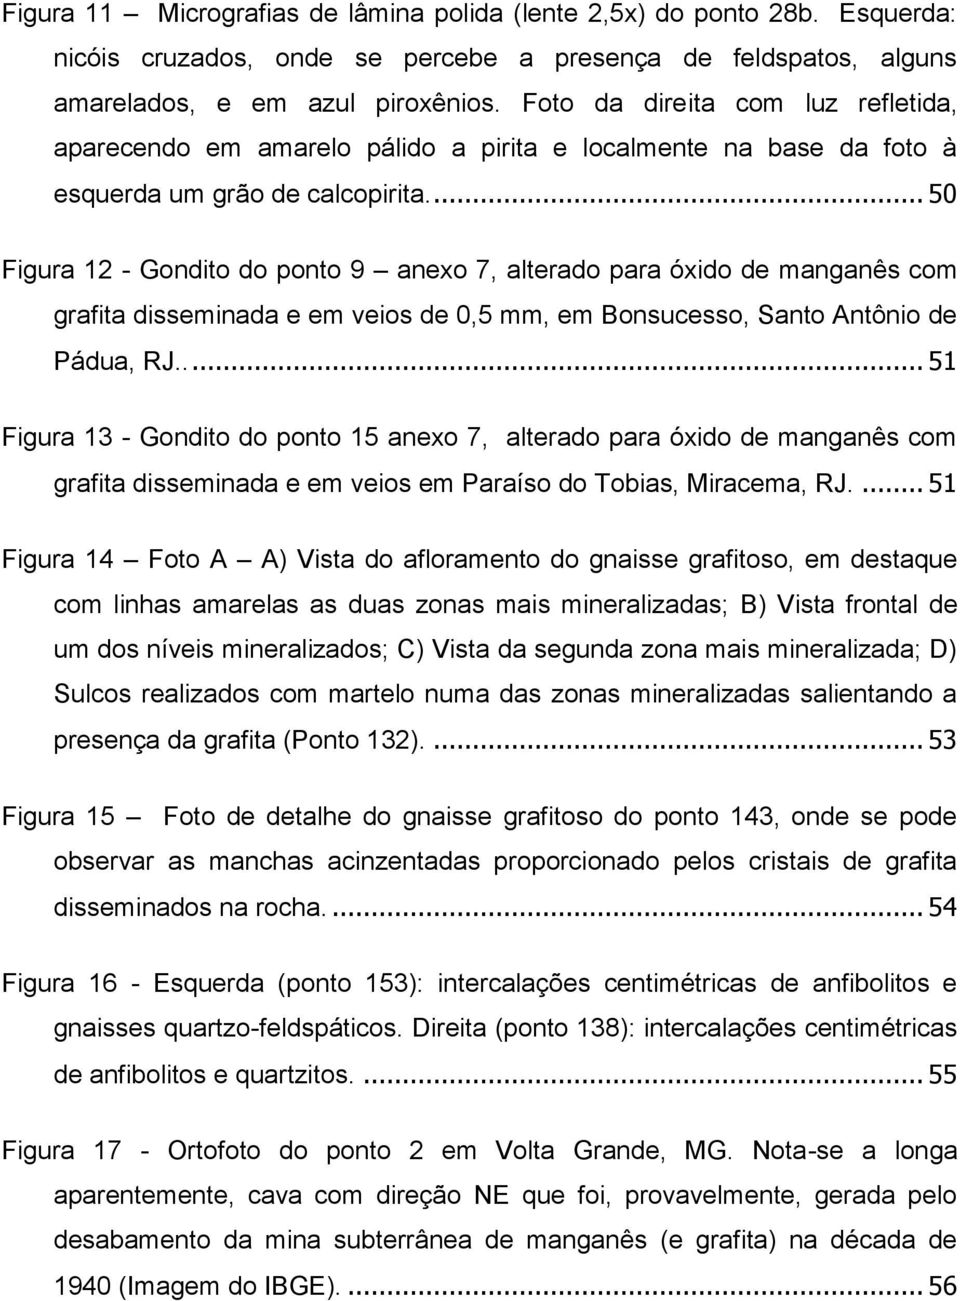 ... 50 Figura 12 - Gondito do ponto 9 anexo 7, alterado para óxido de manganês com grafita disseminada e em veios de 0,5 mm, em Bonsucesso, Santo Antônio de Pádua, RJ.